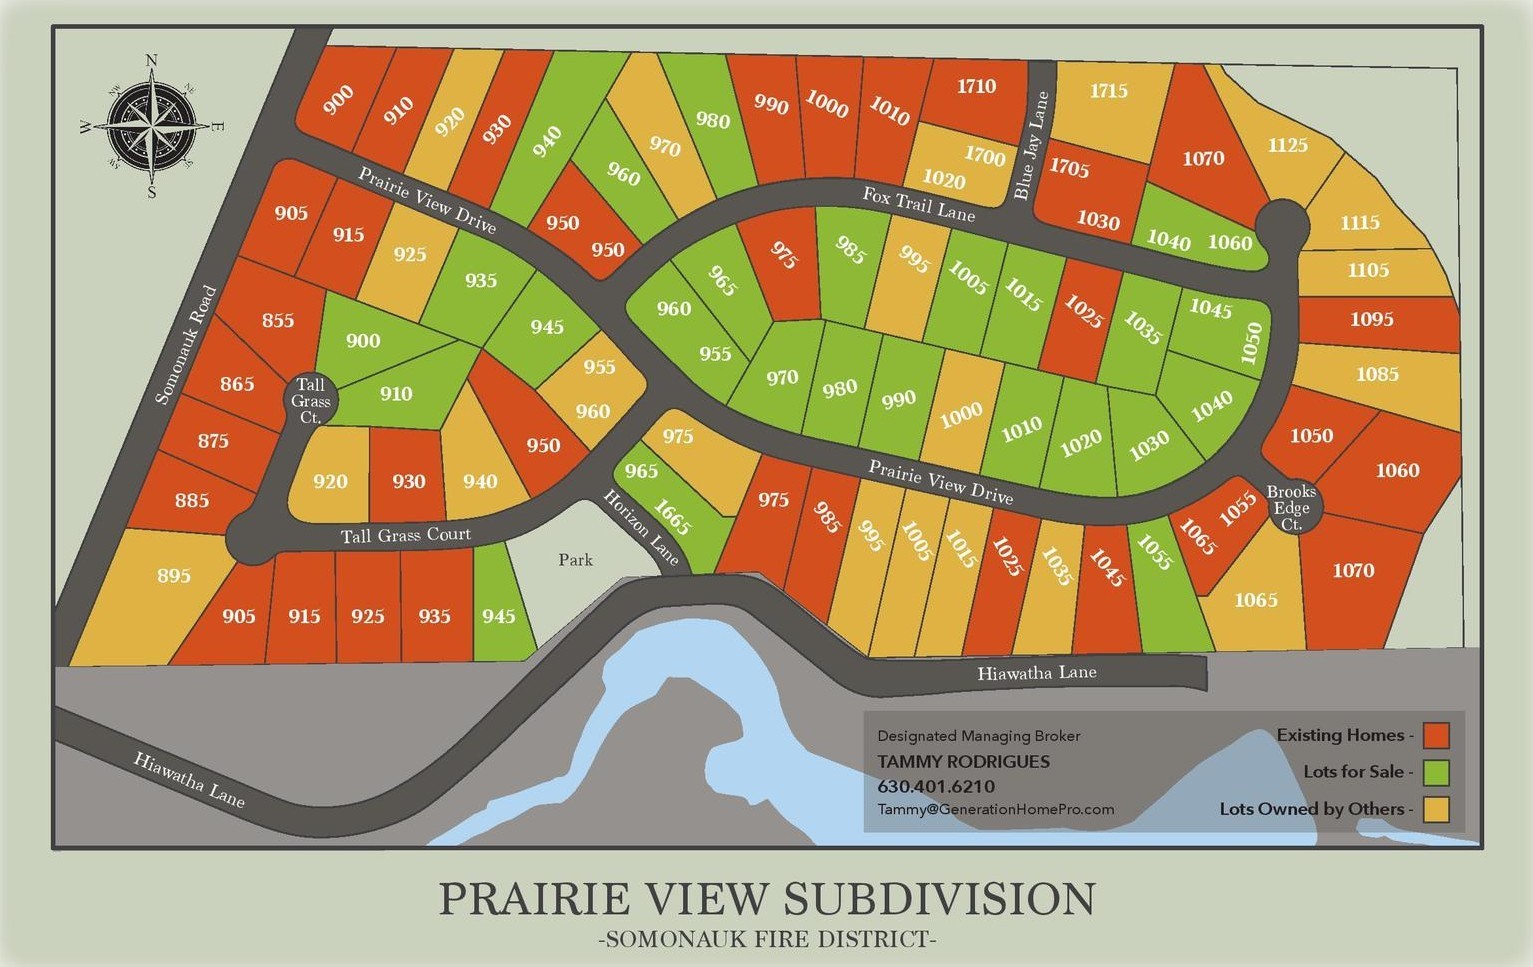 11. 990 Prairie View Drive